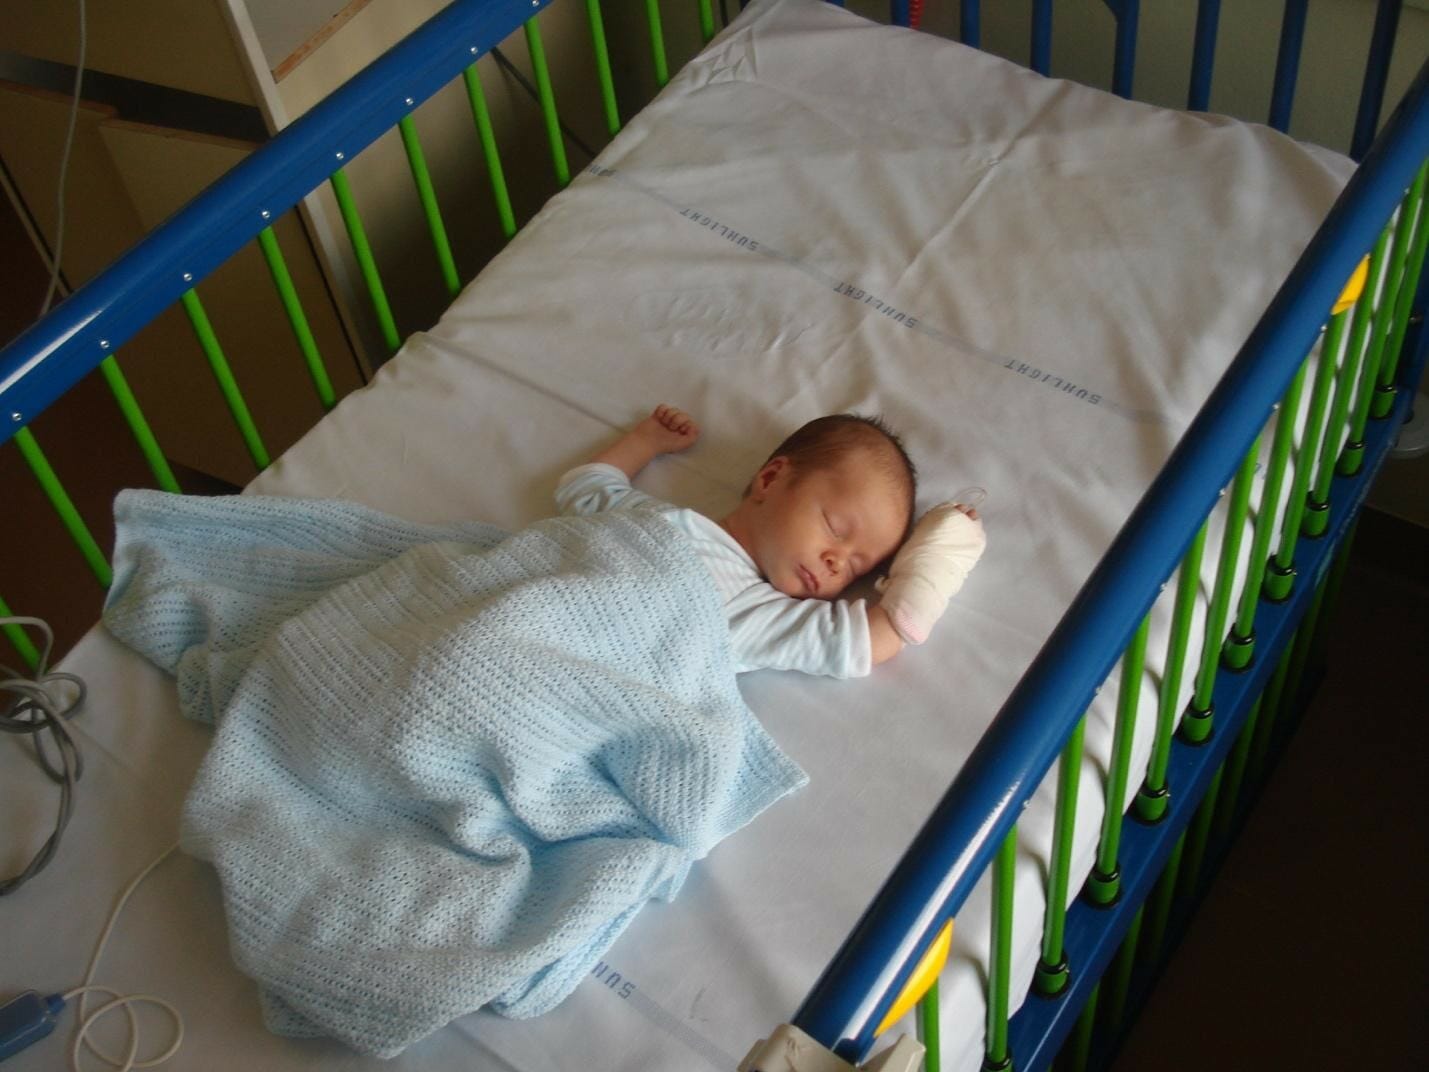 a newborn baby in hospital